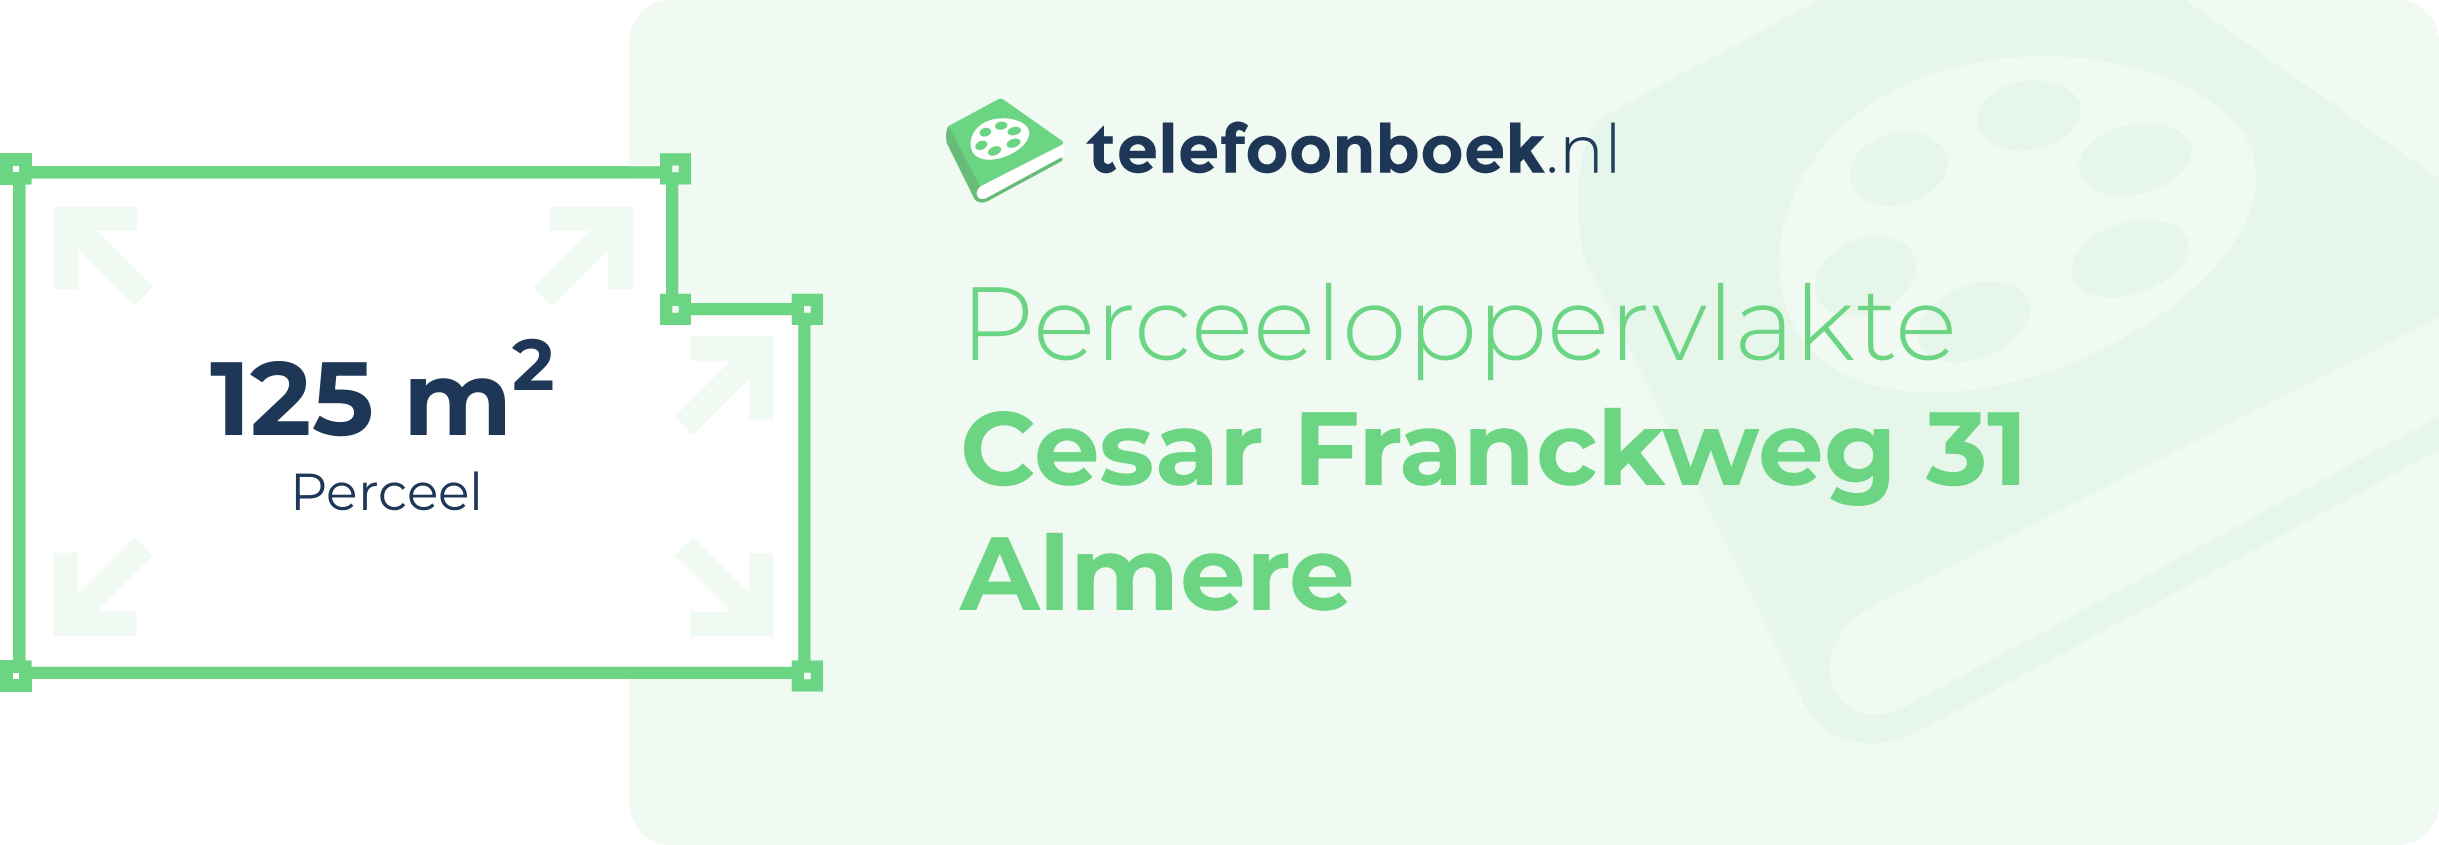 Perceeloppervlakte Cesar Franckweg 31 Almere